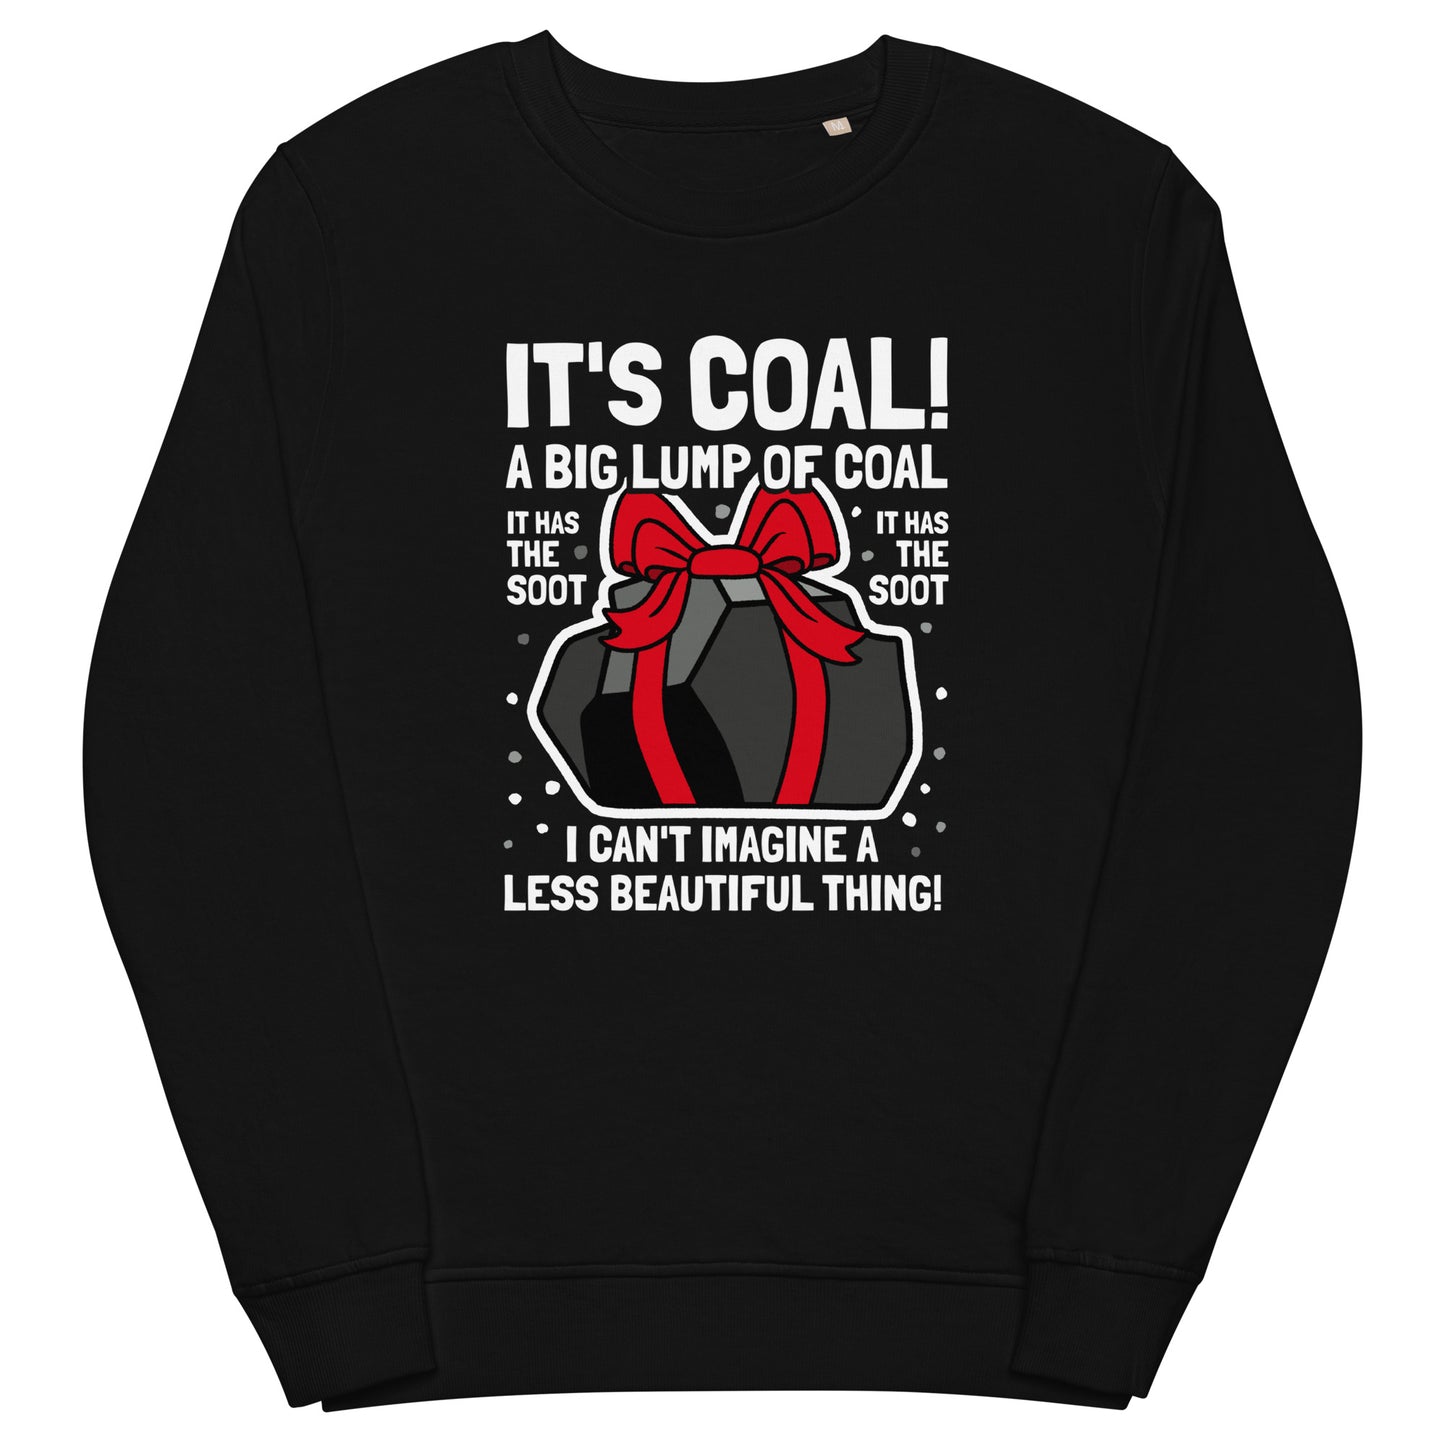 It's coal! Funny Christmas Sweatshirt